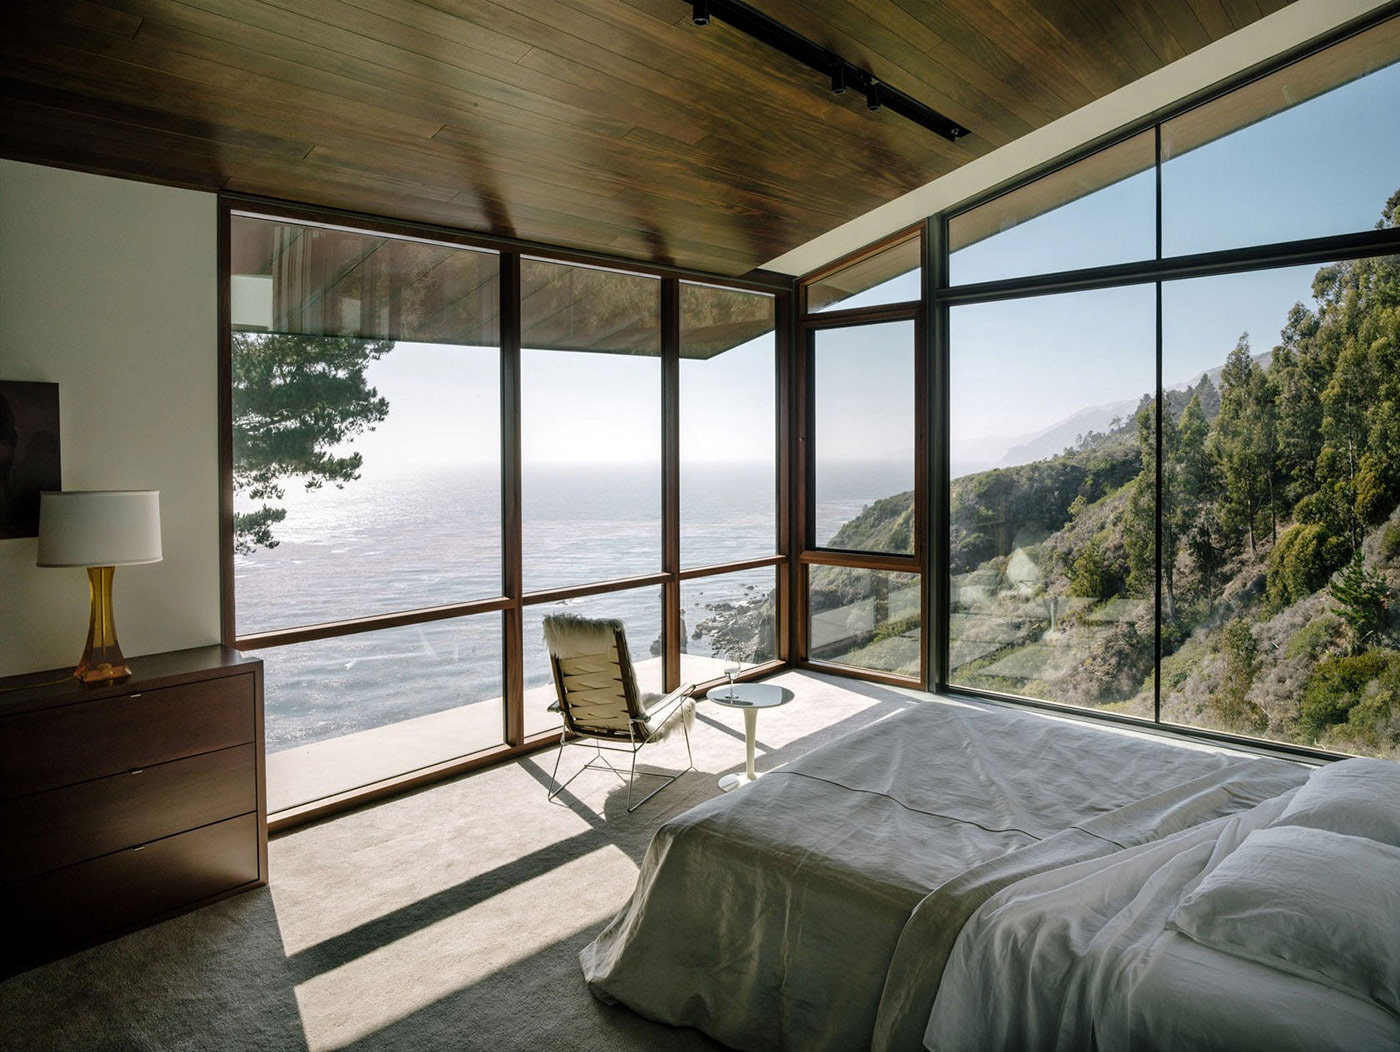 Schlafzimmer Interieur in einem Landhaus mit Panoramafenstern